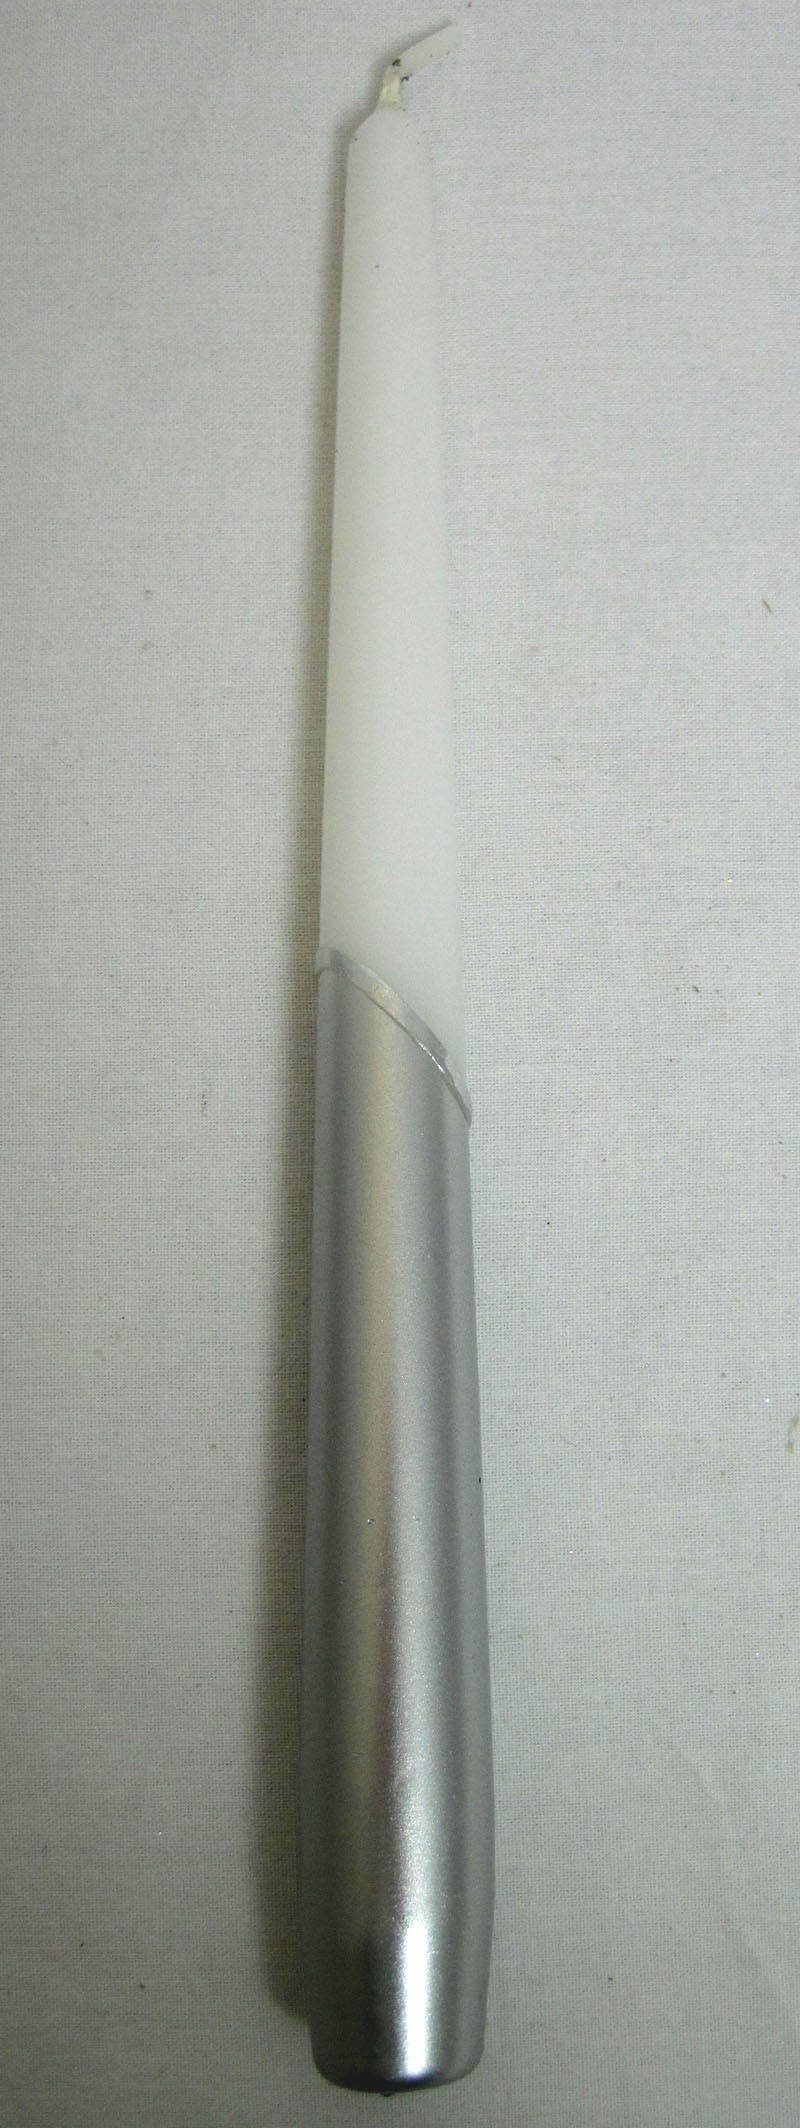 Stabkerze Leuchterkerze Spitzkerze Metallic mit Ring Silber-Weiss, ca. 25 cm 